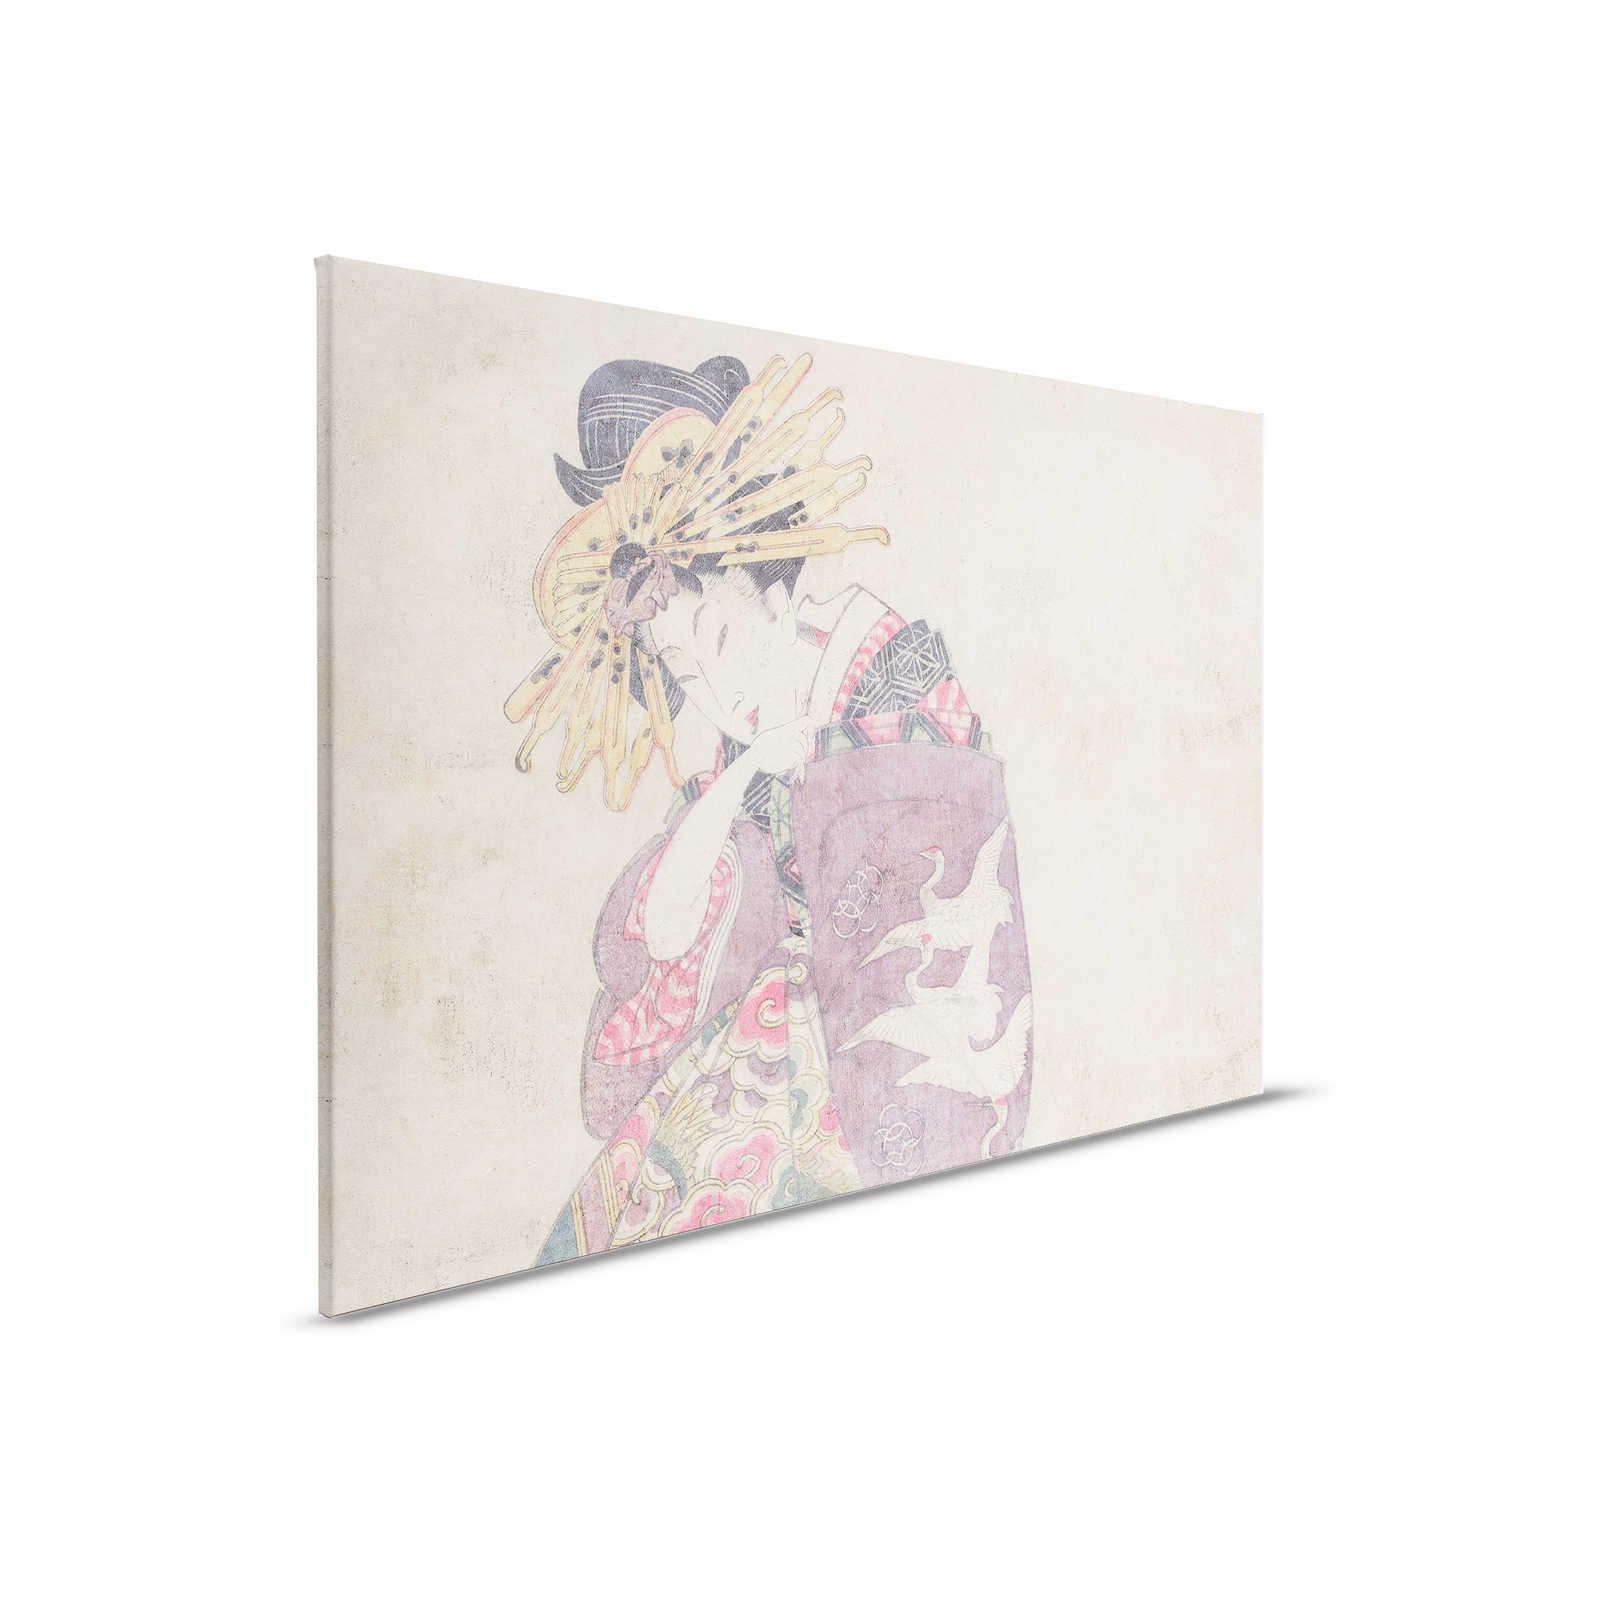 Osaka 1 - Quadro su tela con stampa d'arte Dekor asiatica in stile vintage - 0,90 m x 0,60 m
